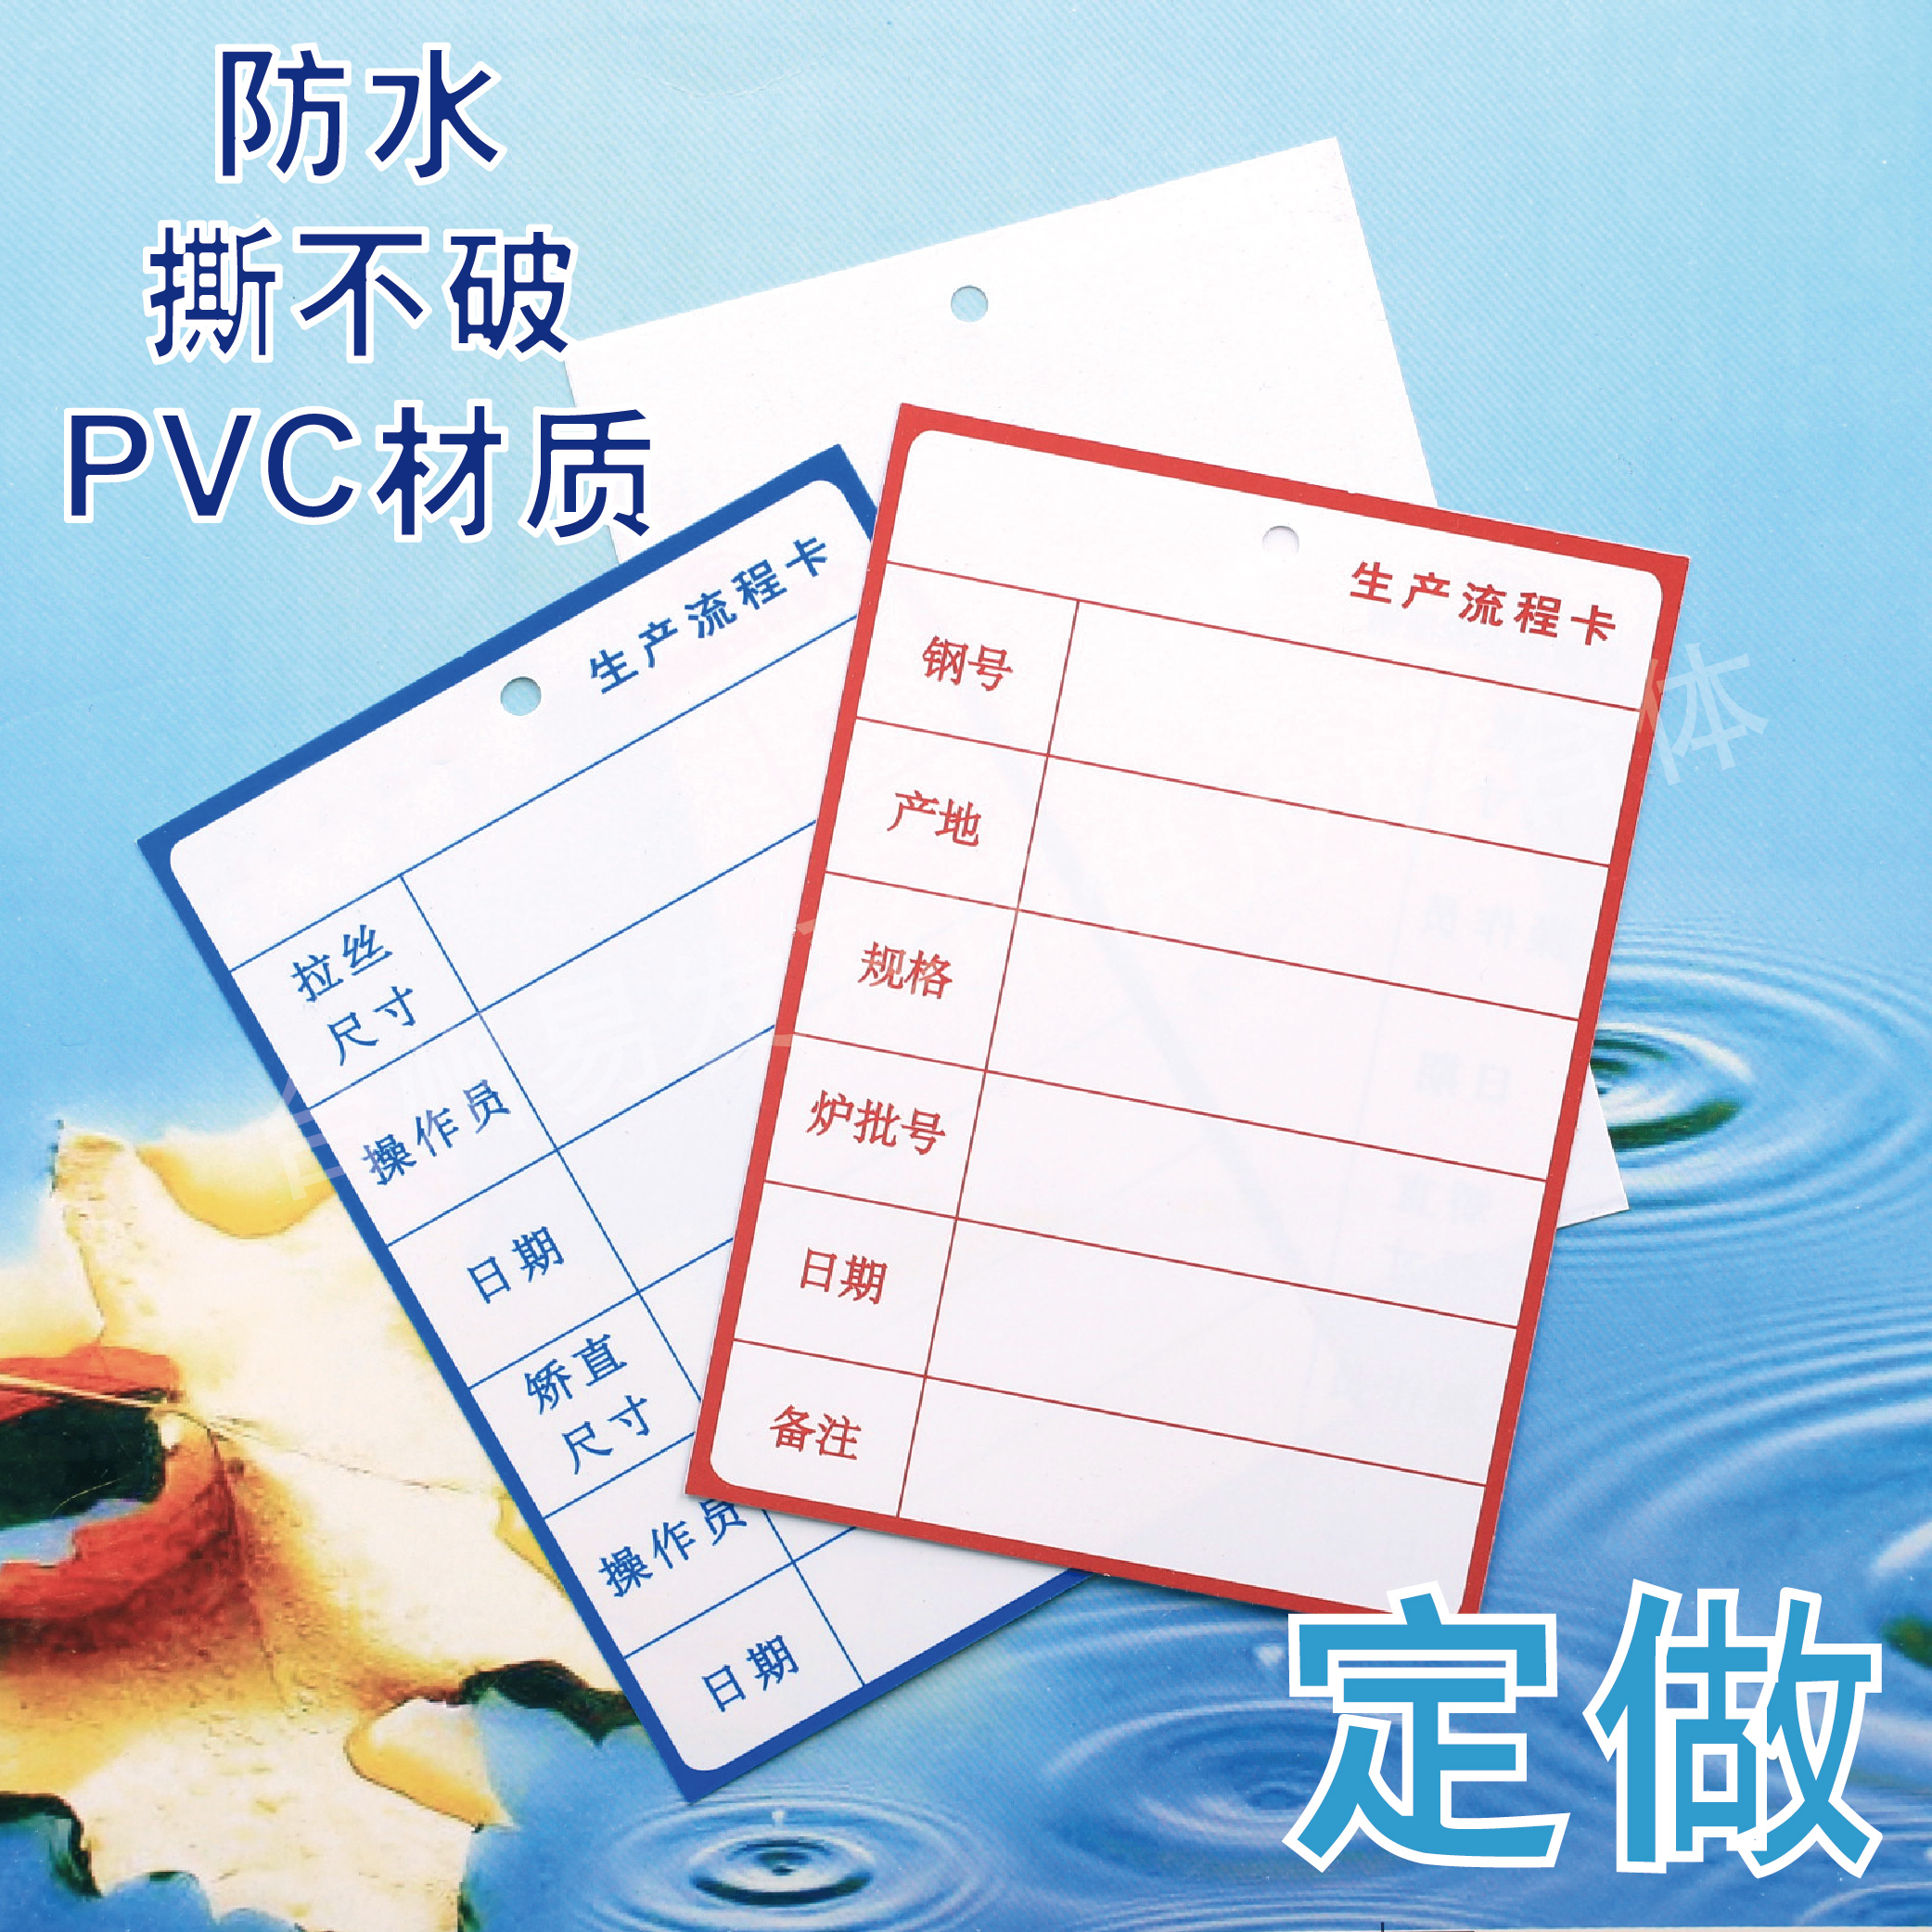 定做防水生产流程卡撕不破工序流转卡PVC工艺卡塑料物资检验标识